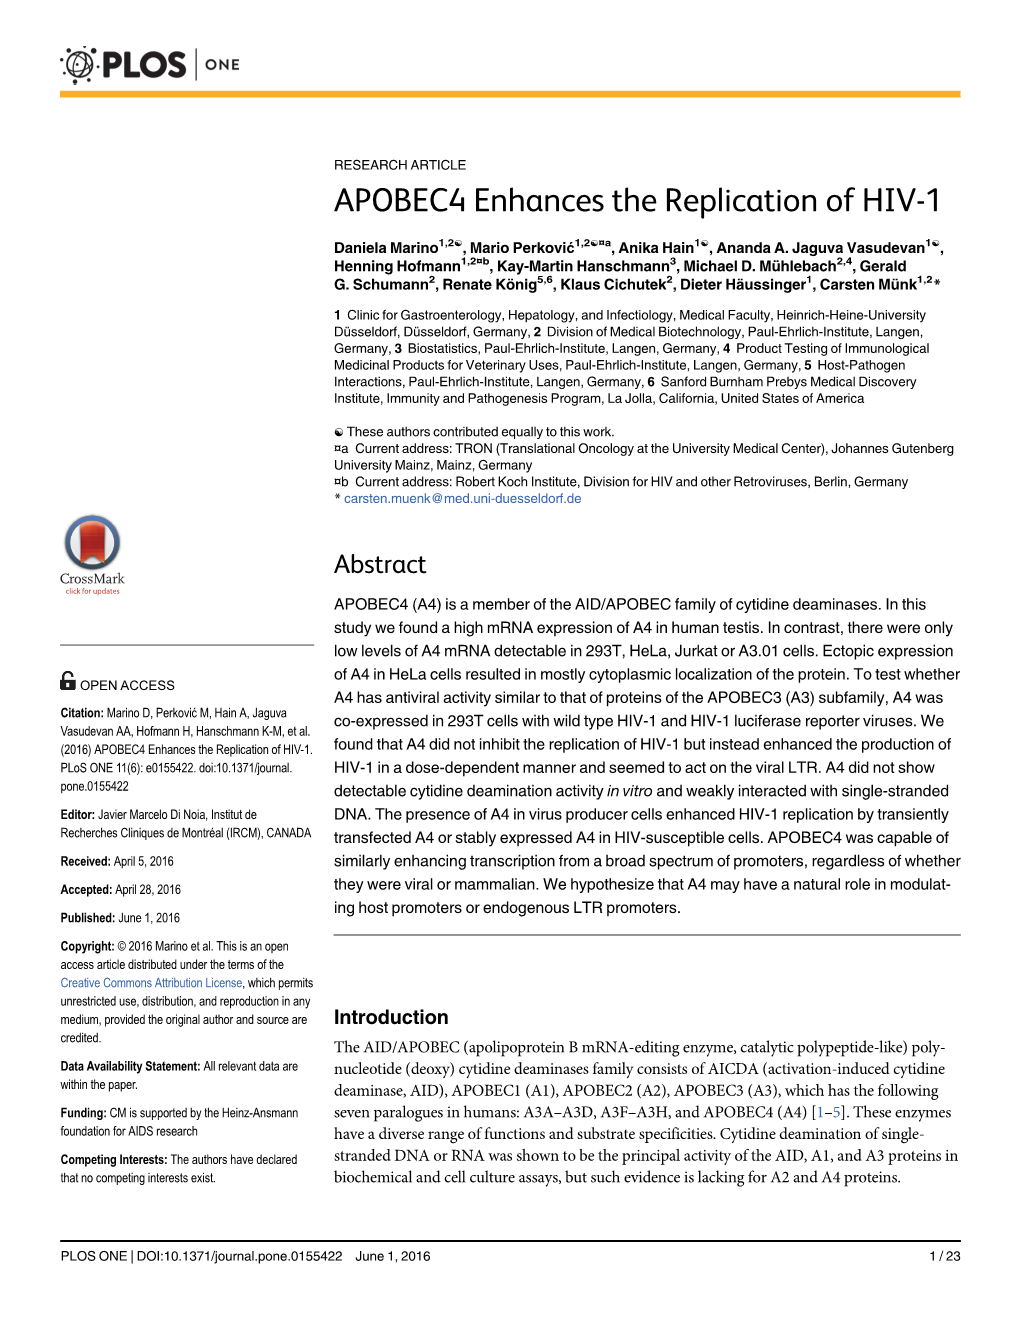 APOBEC4 Enhances the Replication of HIV-1